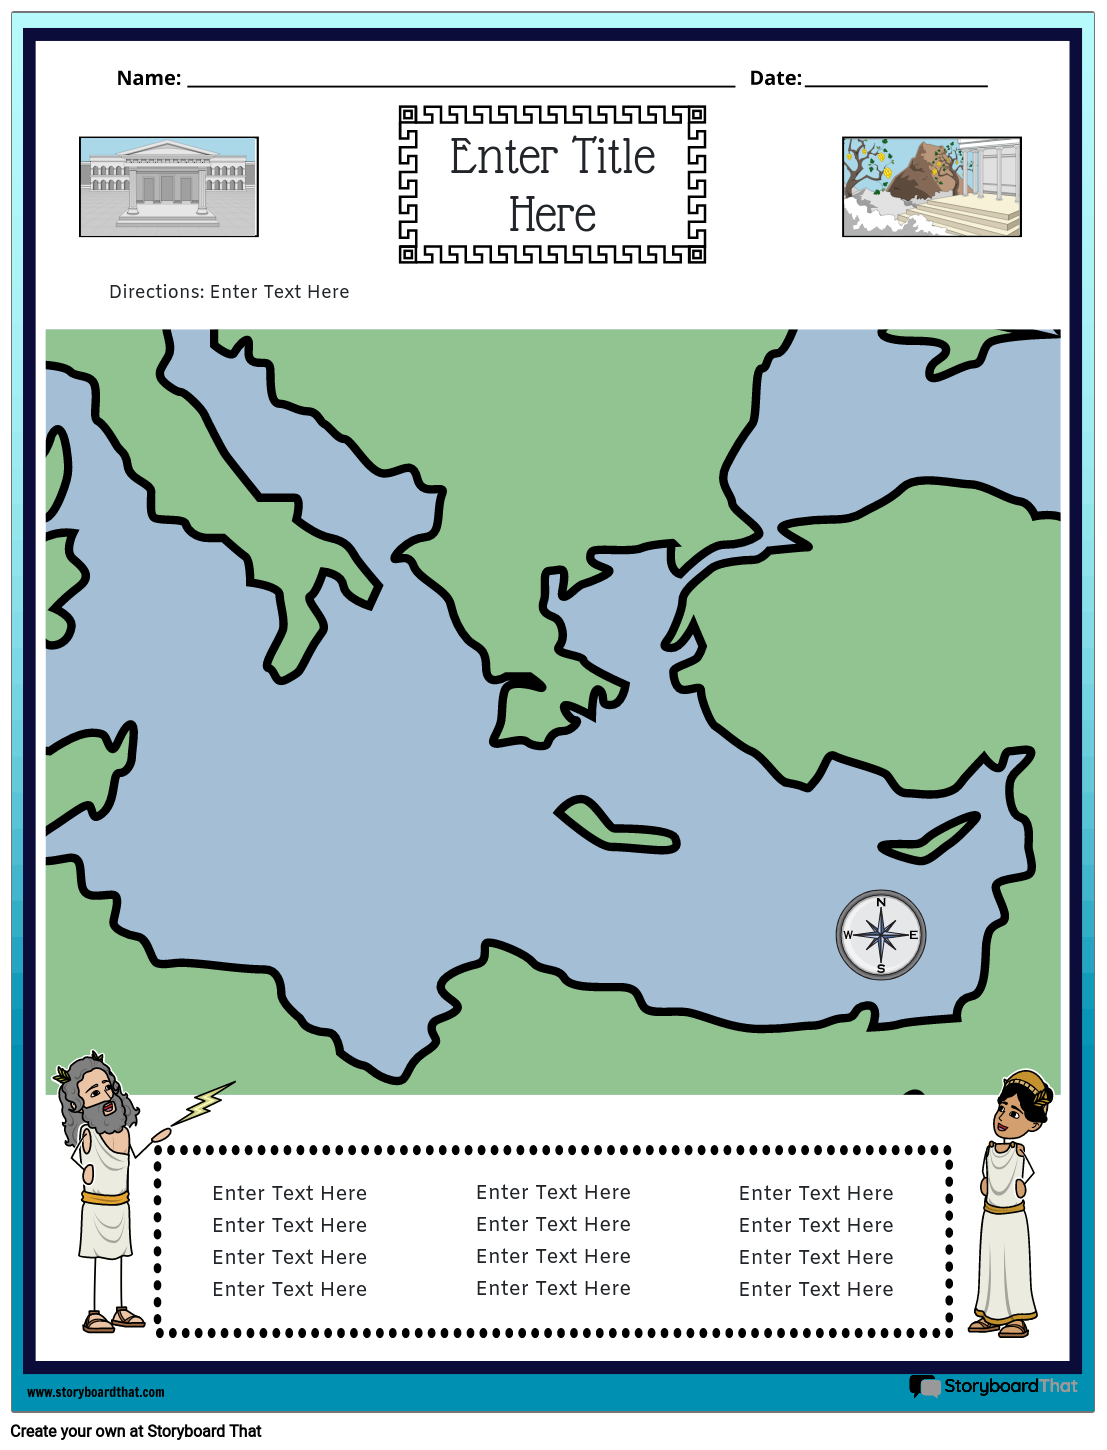 प्राचीन ग्रीस का नक्शा